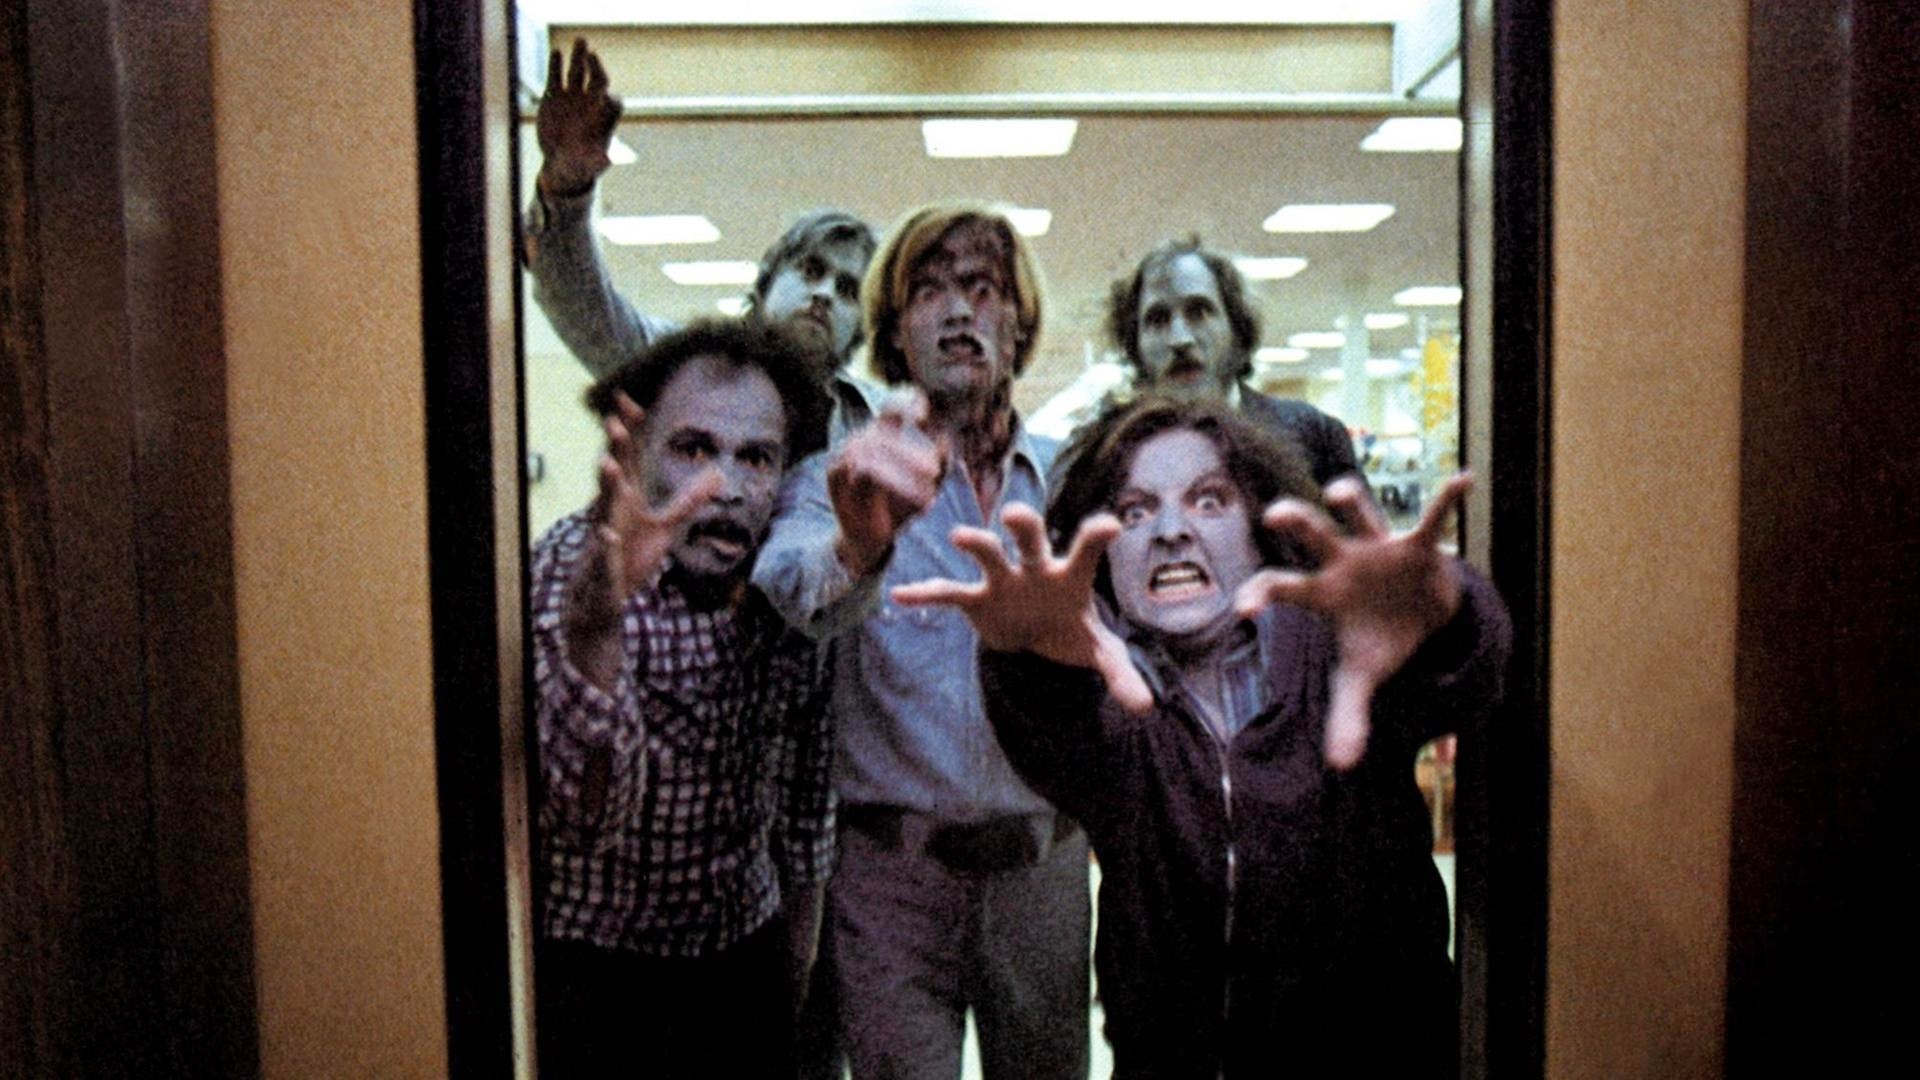 Los zombis atacan en un ascensor en "Dawn of the Dead" (1978).